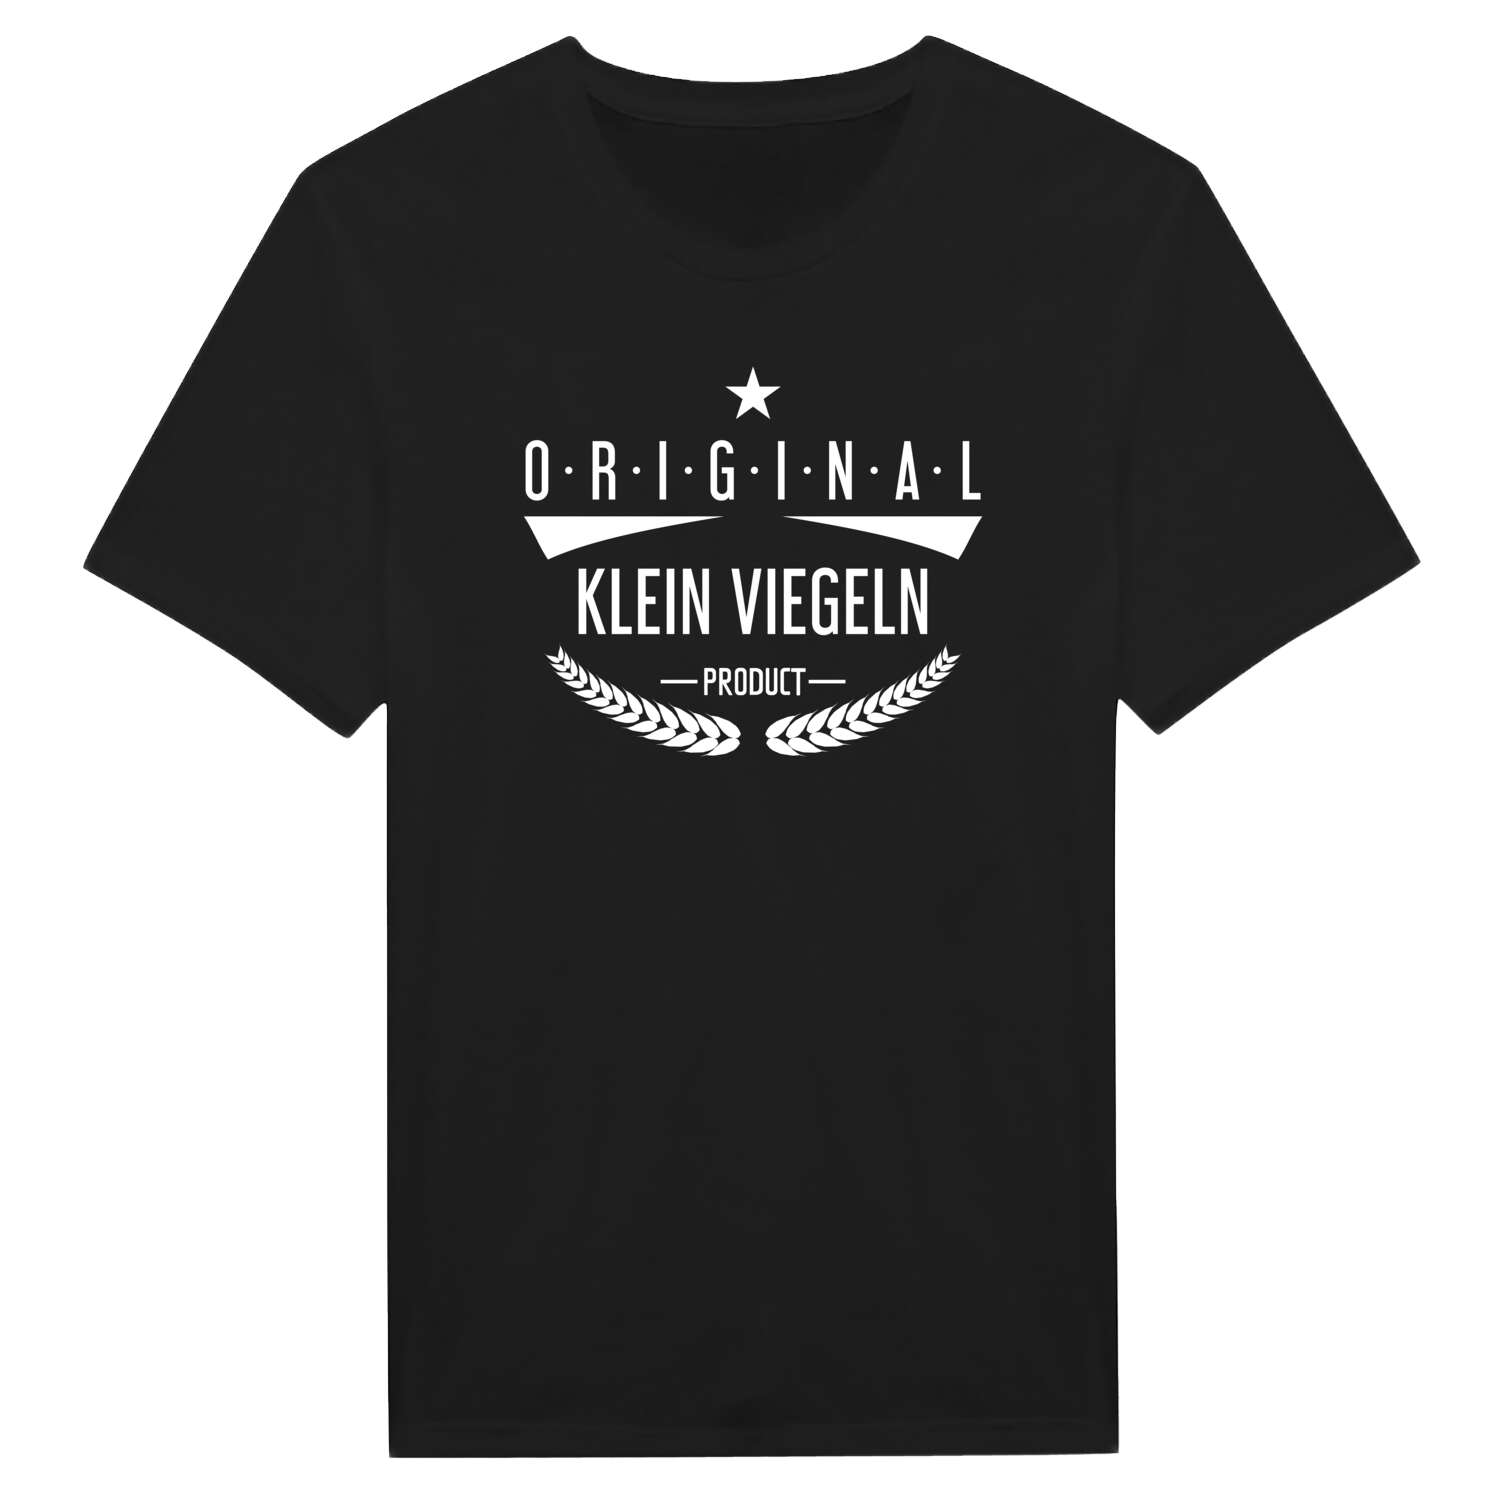 Klein Viegeln T-Shirt »Original Product«